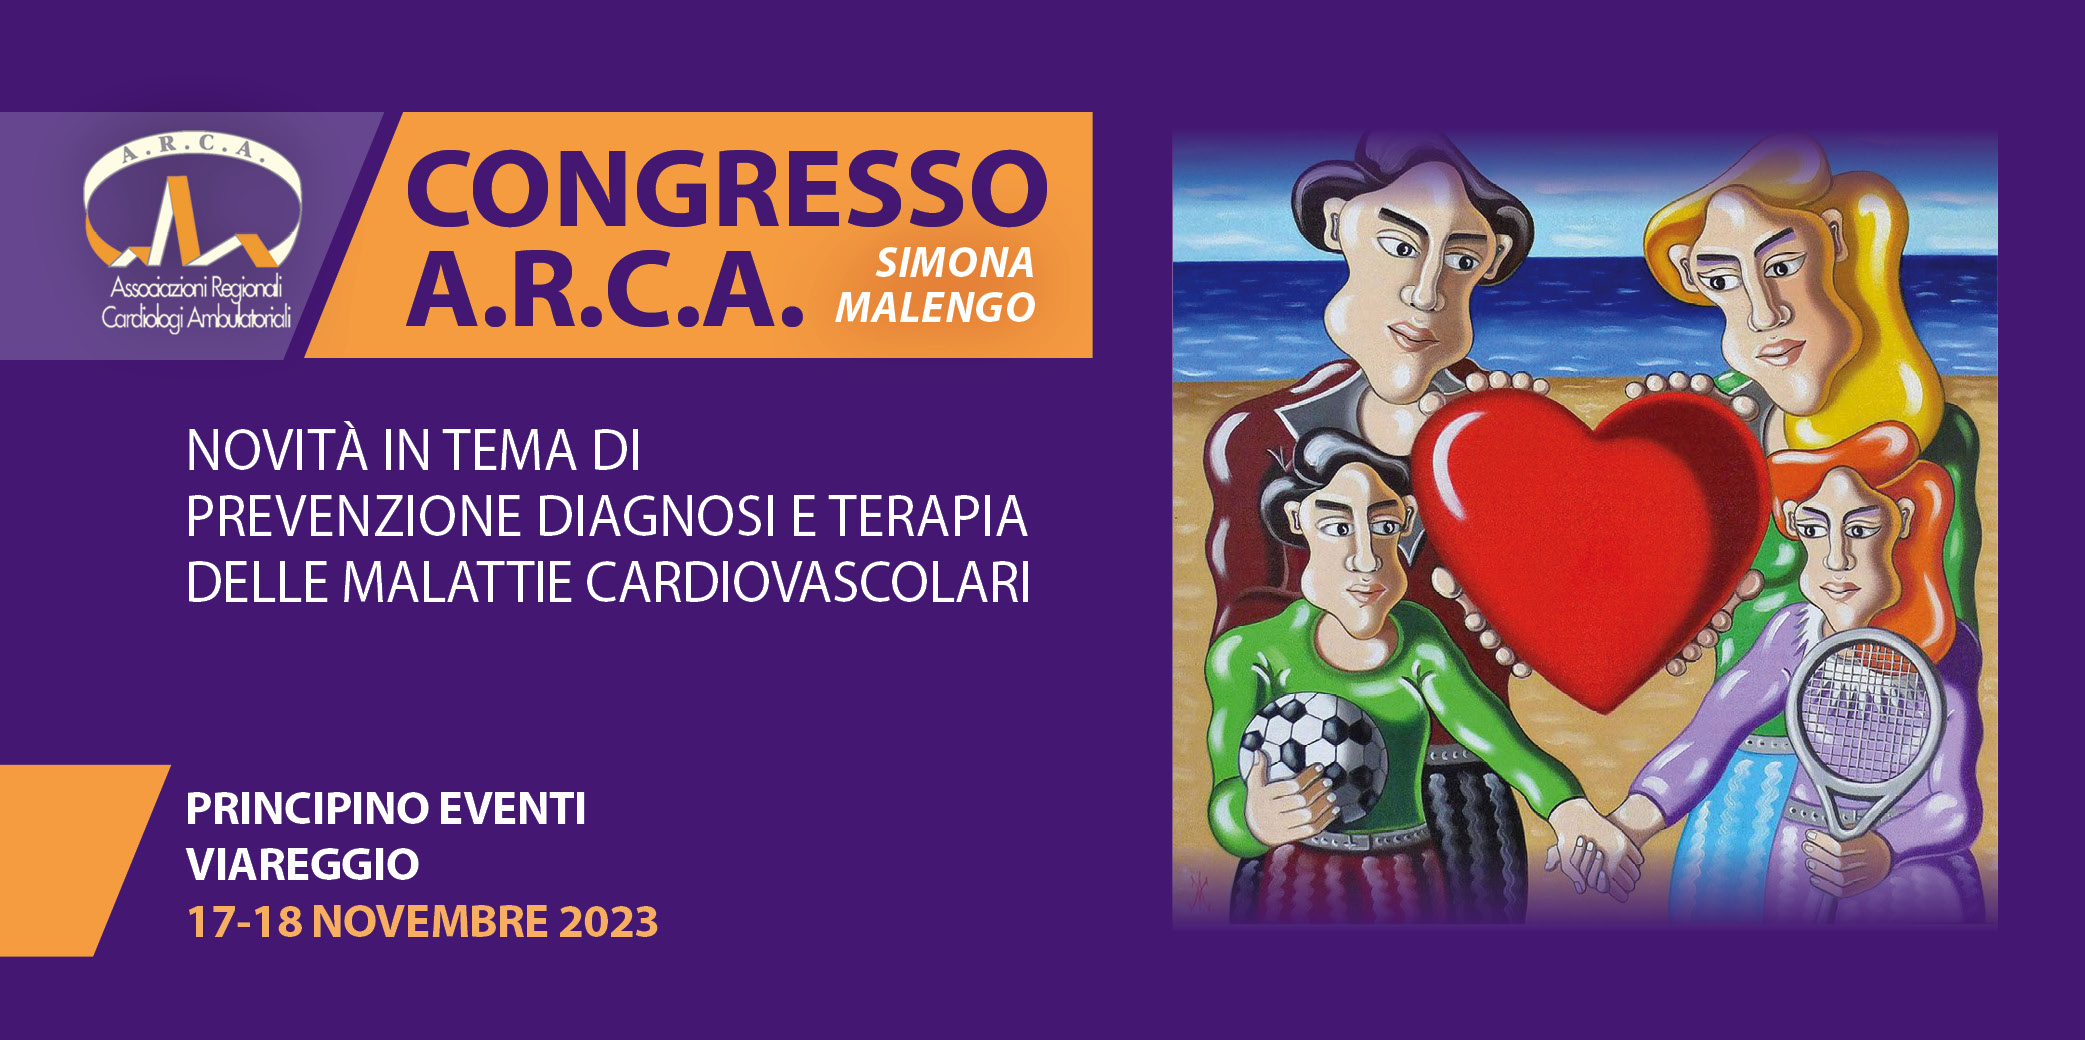 Congresso A.R.C.A. : Novità in tema di prevenzione diagnosi e terapia delle malattie cardiovascolari – Viareggio, 17-18 Novembre 2023